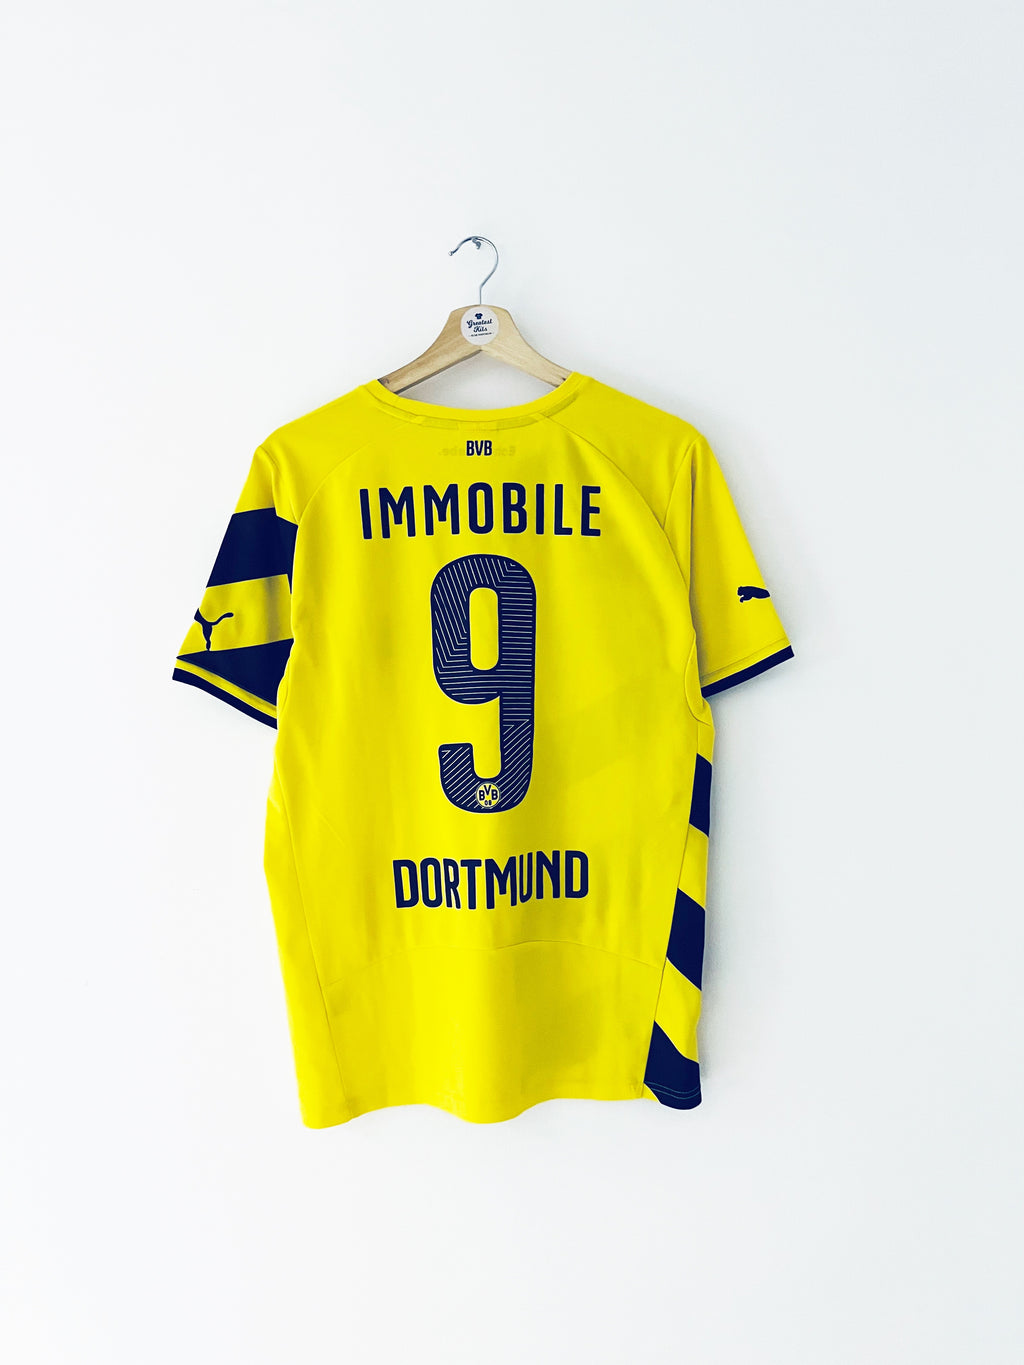 2014/15 Borussia Dortmund Maillot Domicile Immobile #9 (M) 9/10